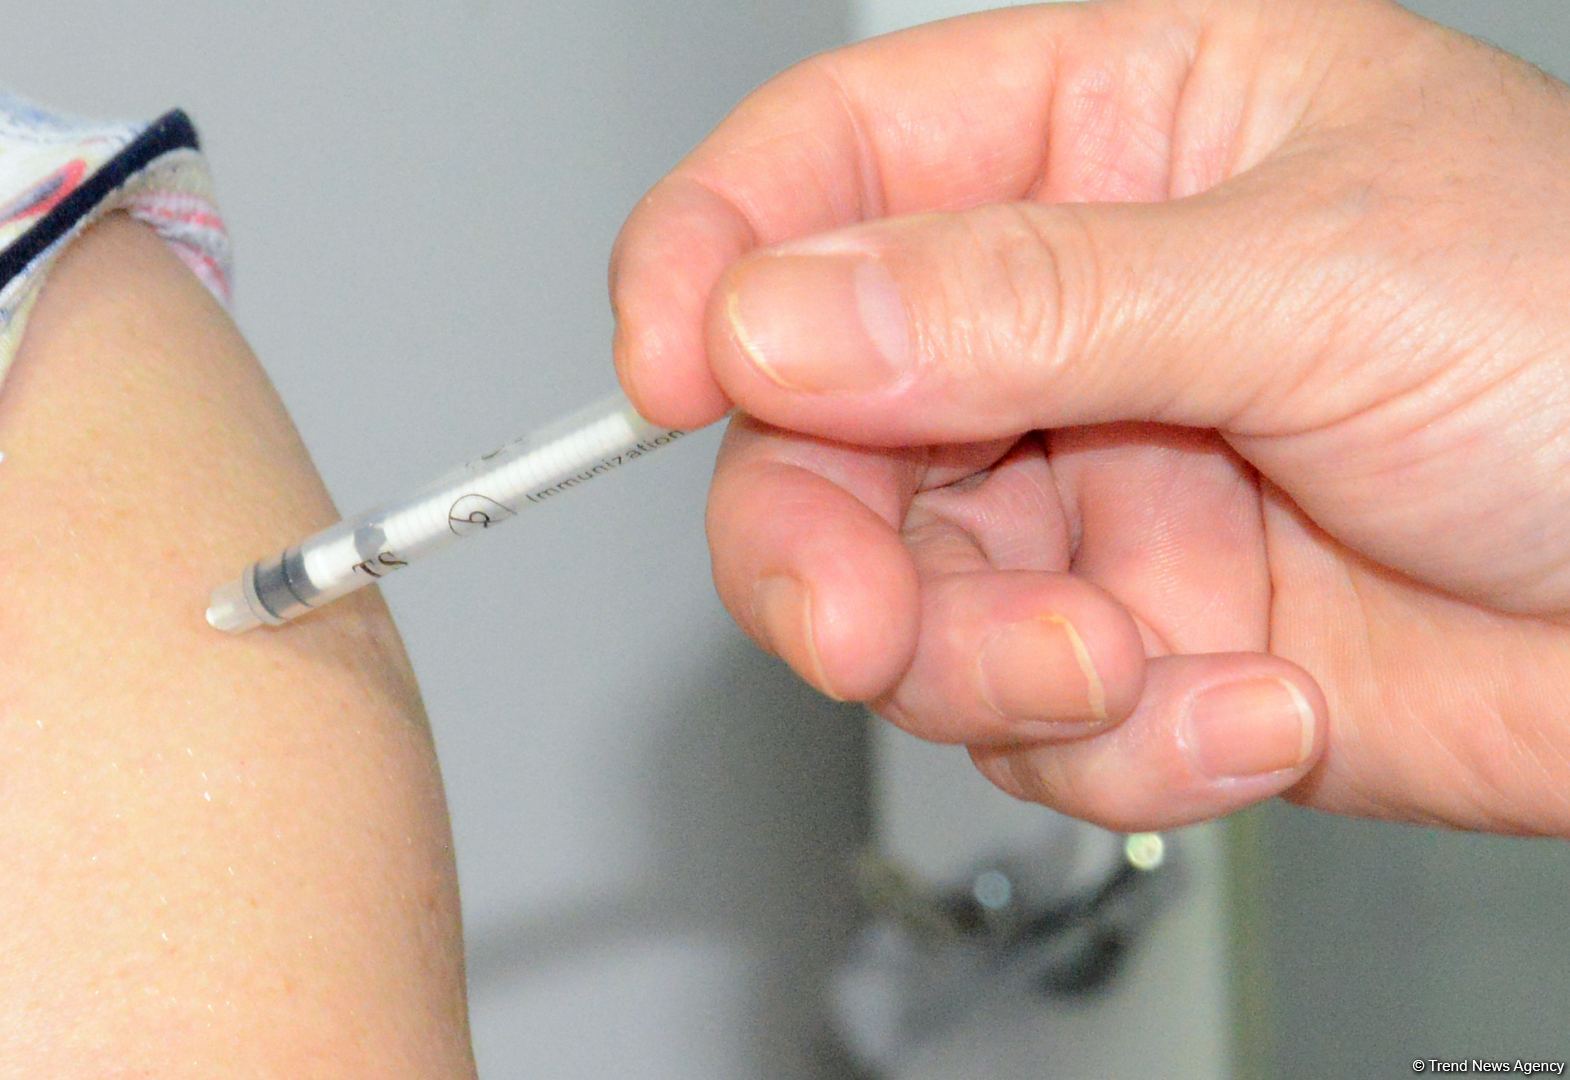 В Азербайджане рекомендуется вакцинация населения против гриппа